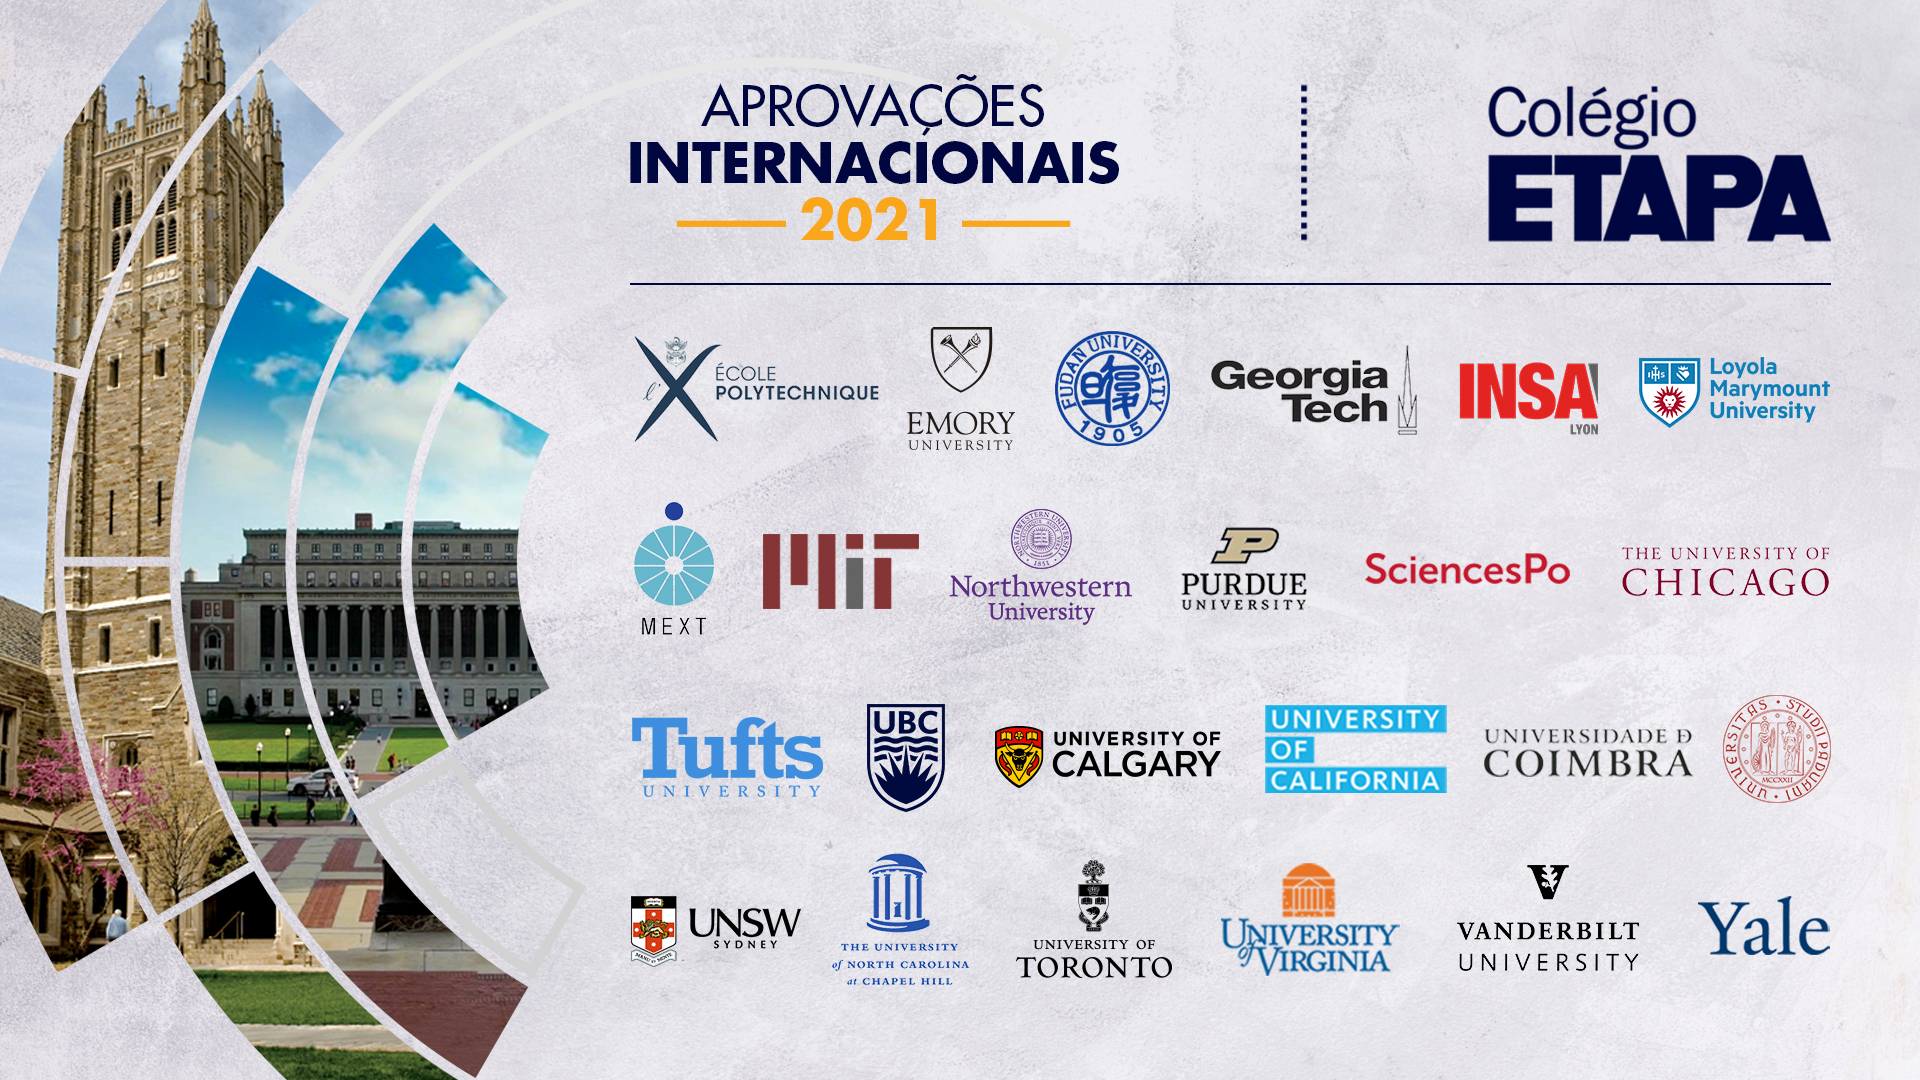 Confira os depoimentos dos aprovados internacionais do Colégio Etapa, escola brasileira que mais aprova no exterior.